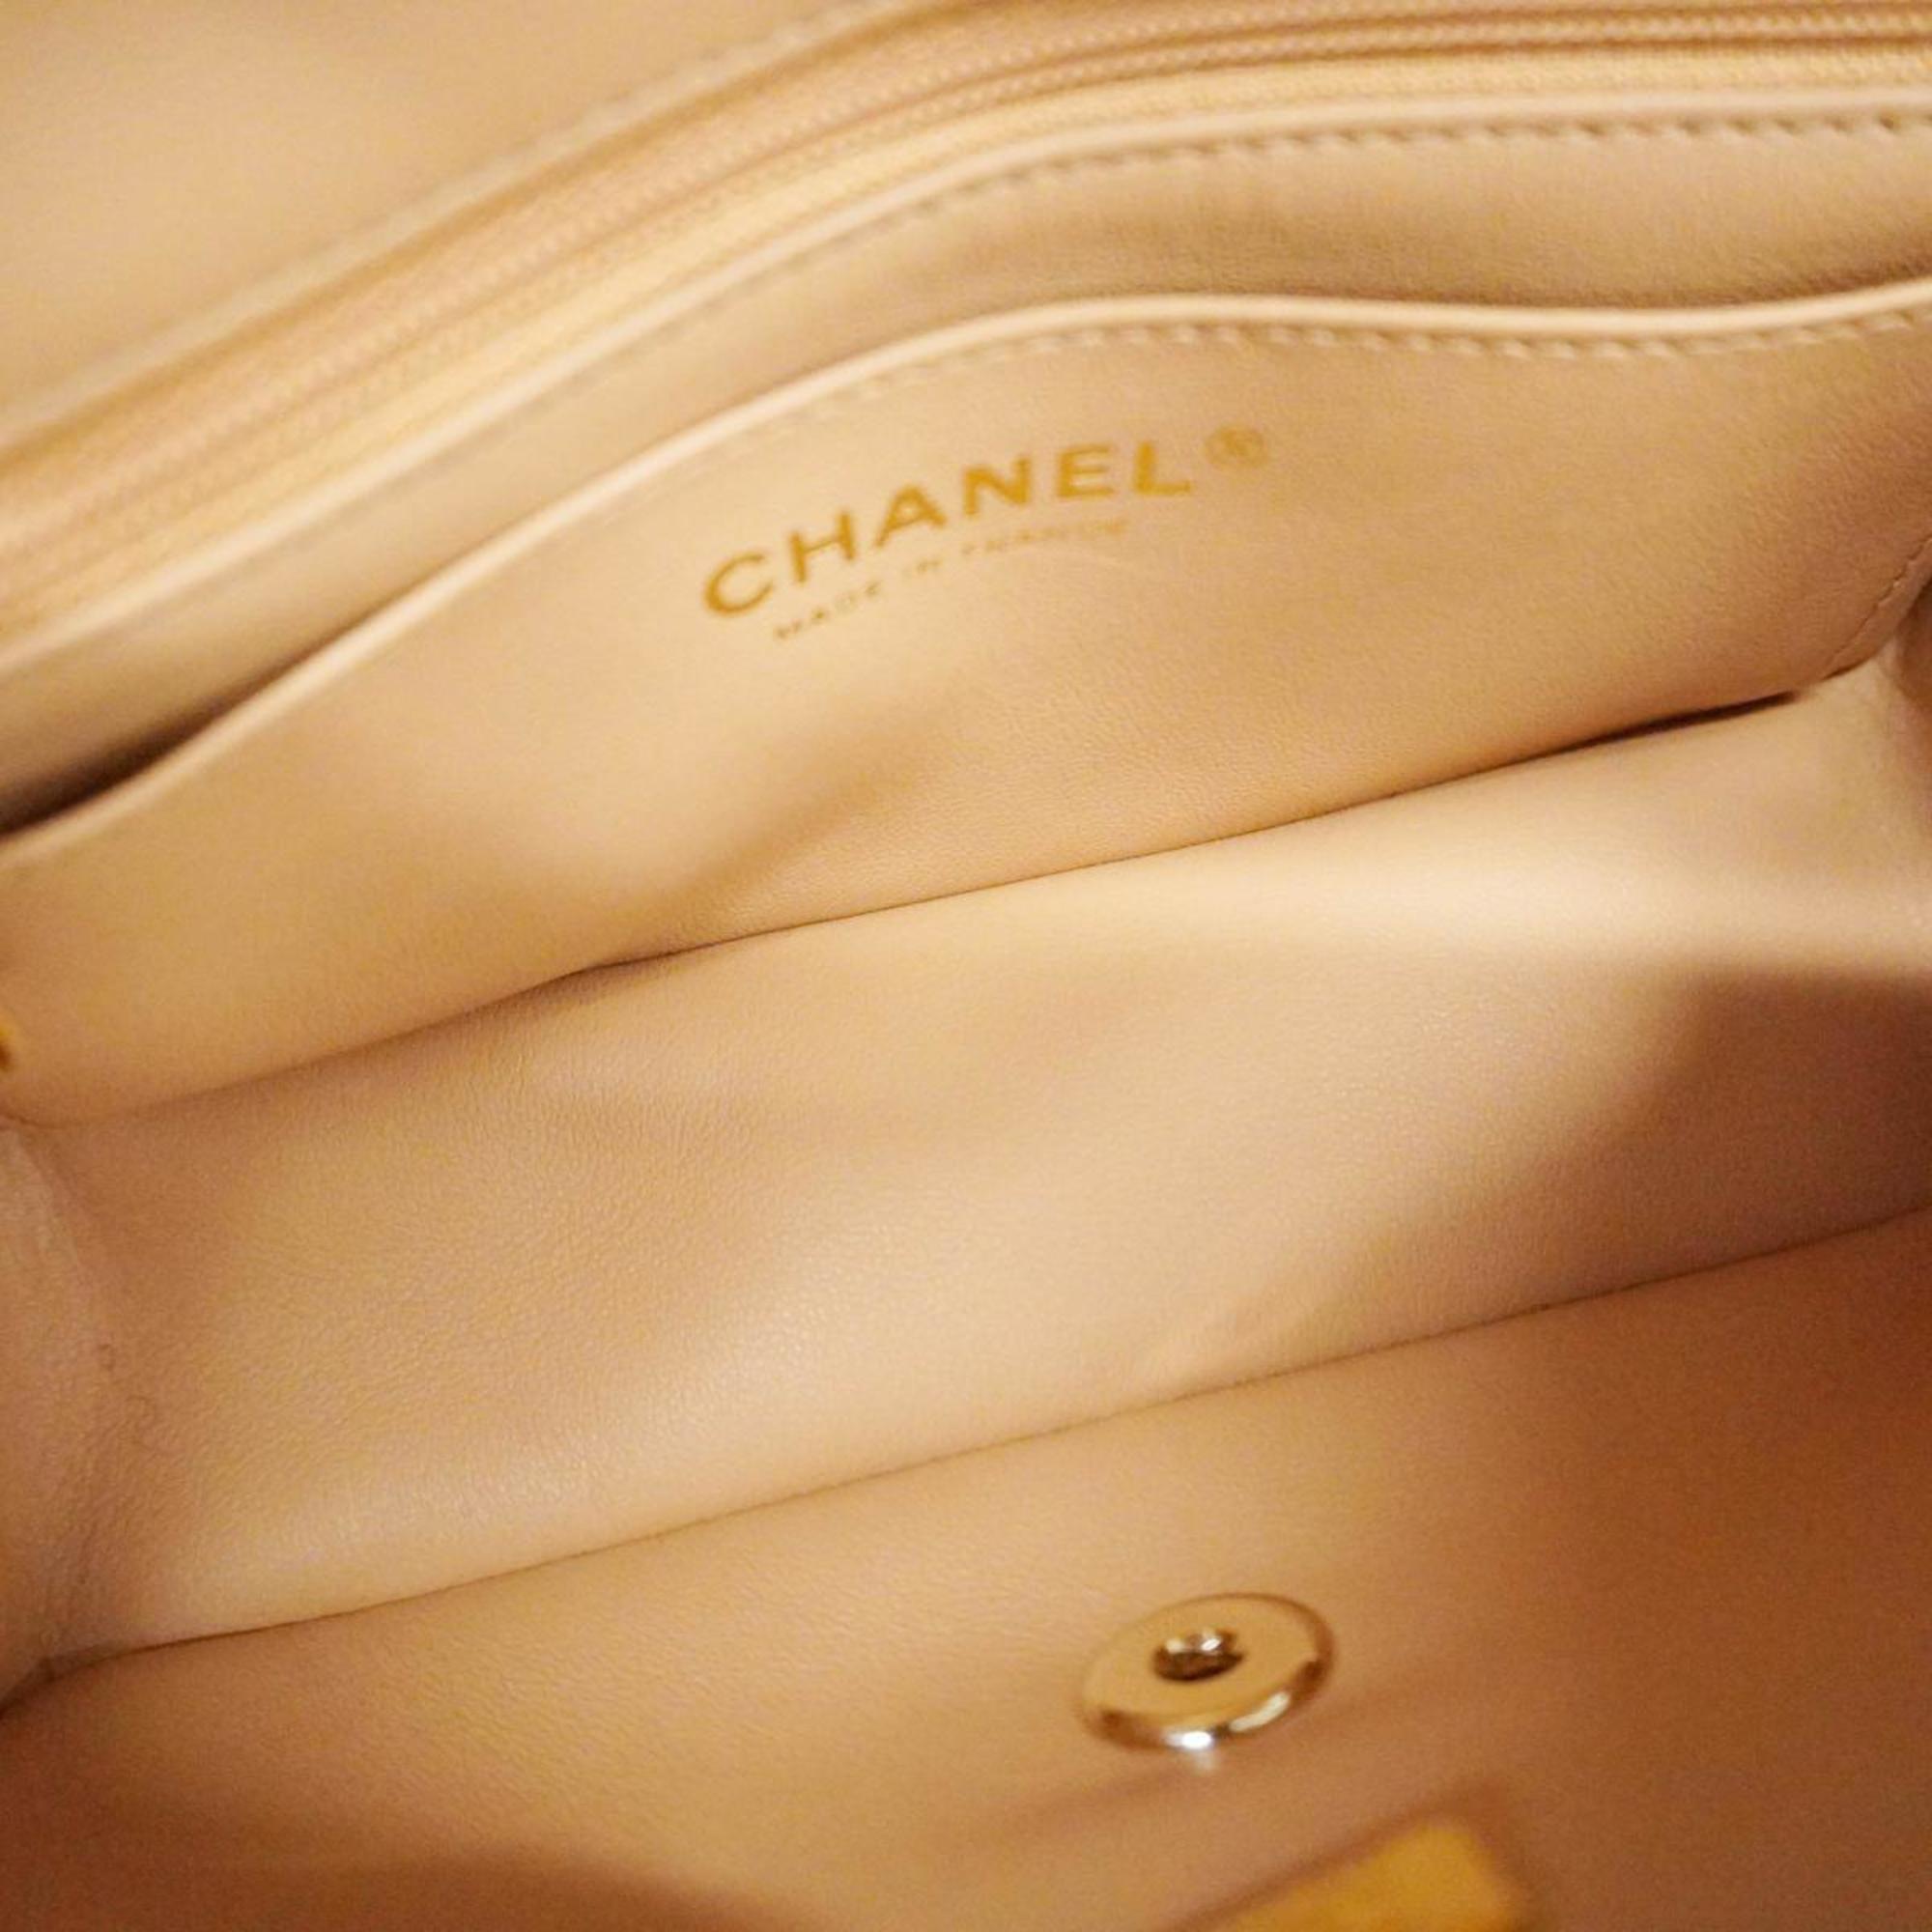 シャネル(Chanel) シャネル ハンドバッグ マトラッセ チェーンショルダー ラムスキン ピンクベージュ シャンパン  レディース